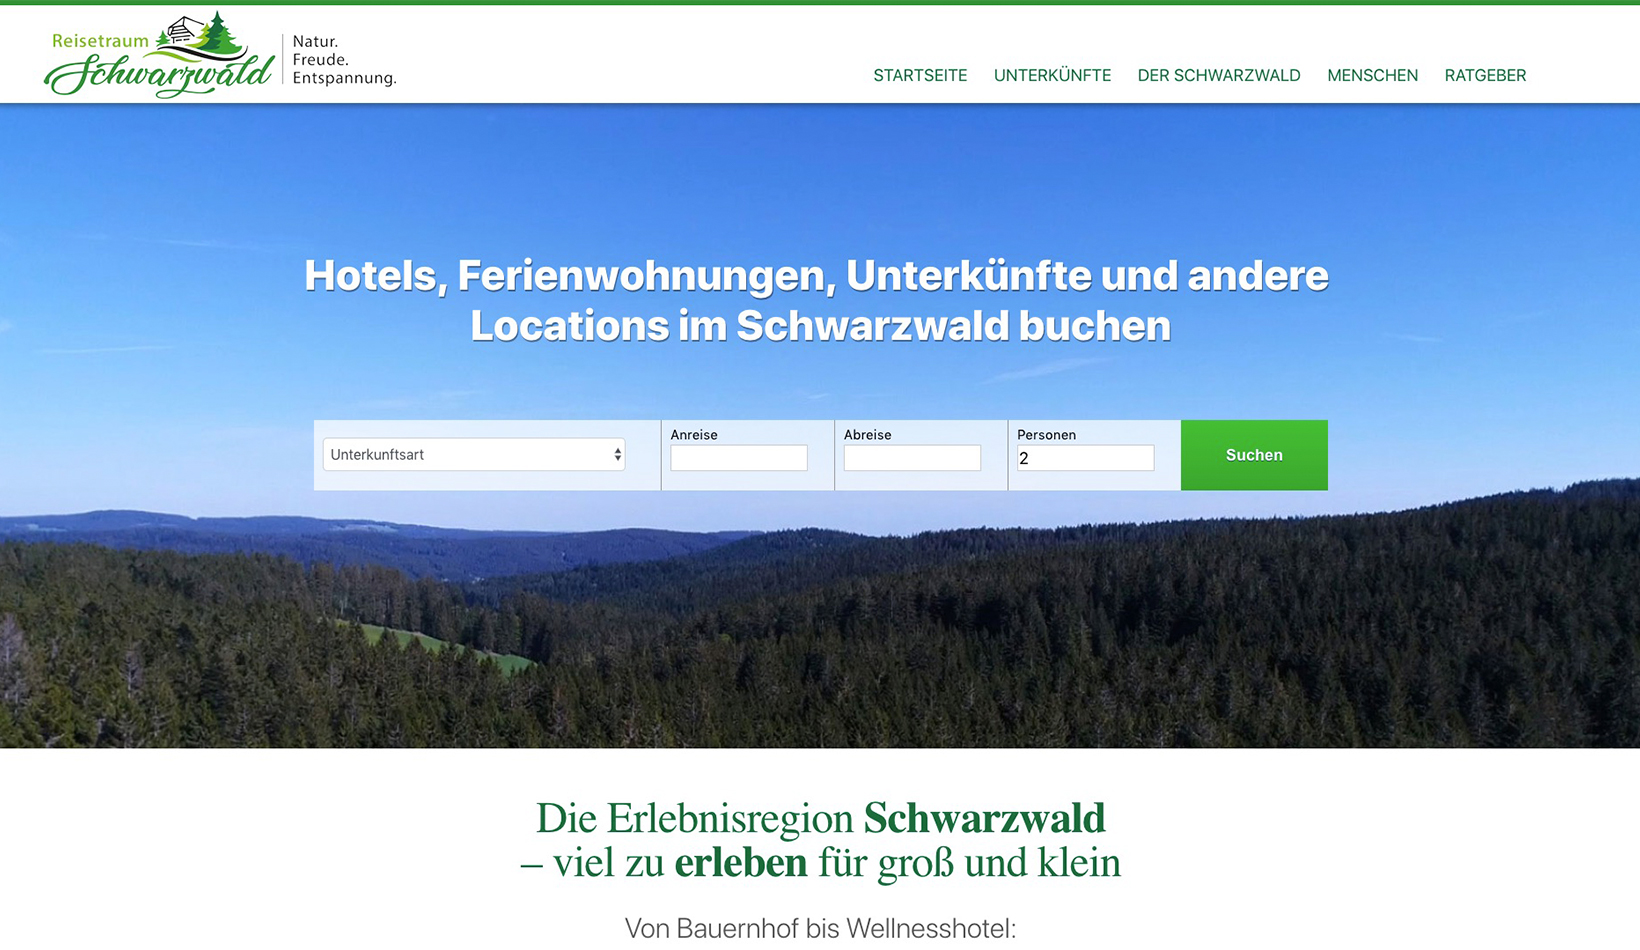 Referenz: Reiseportal aus dem Schwarzwald